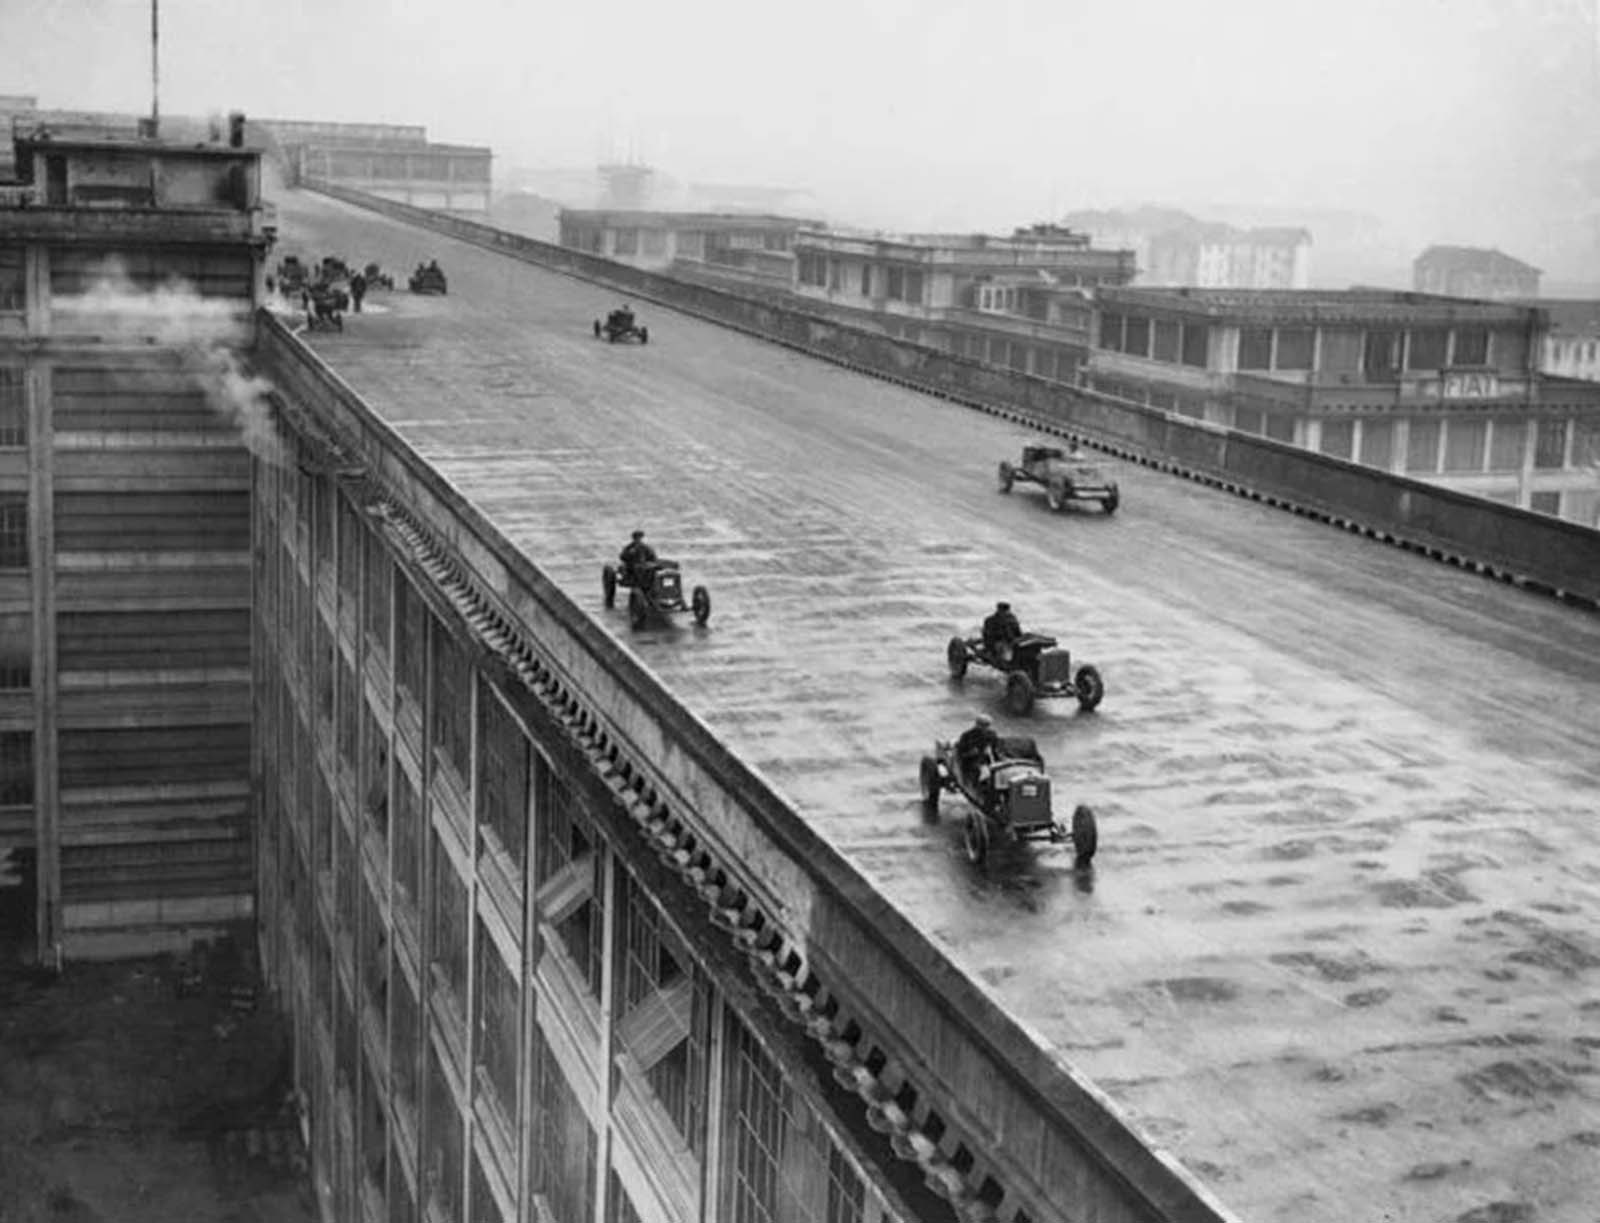 Une piste de course sur le toit de l'usine Lingotto de Fiat en Italie, 1923